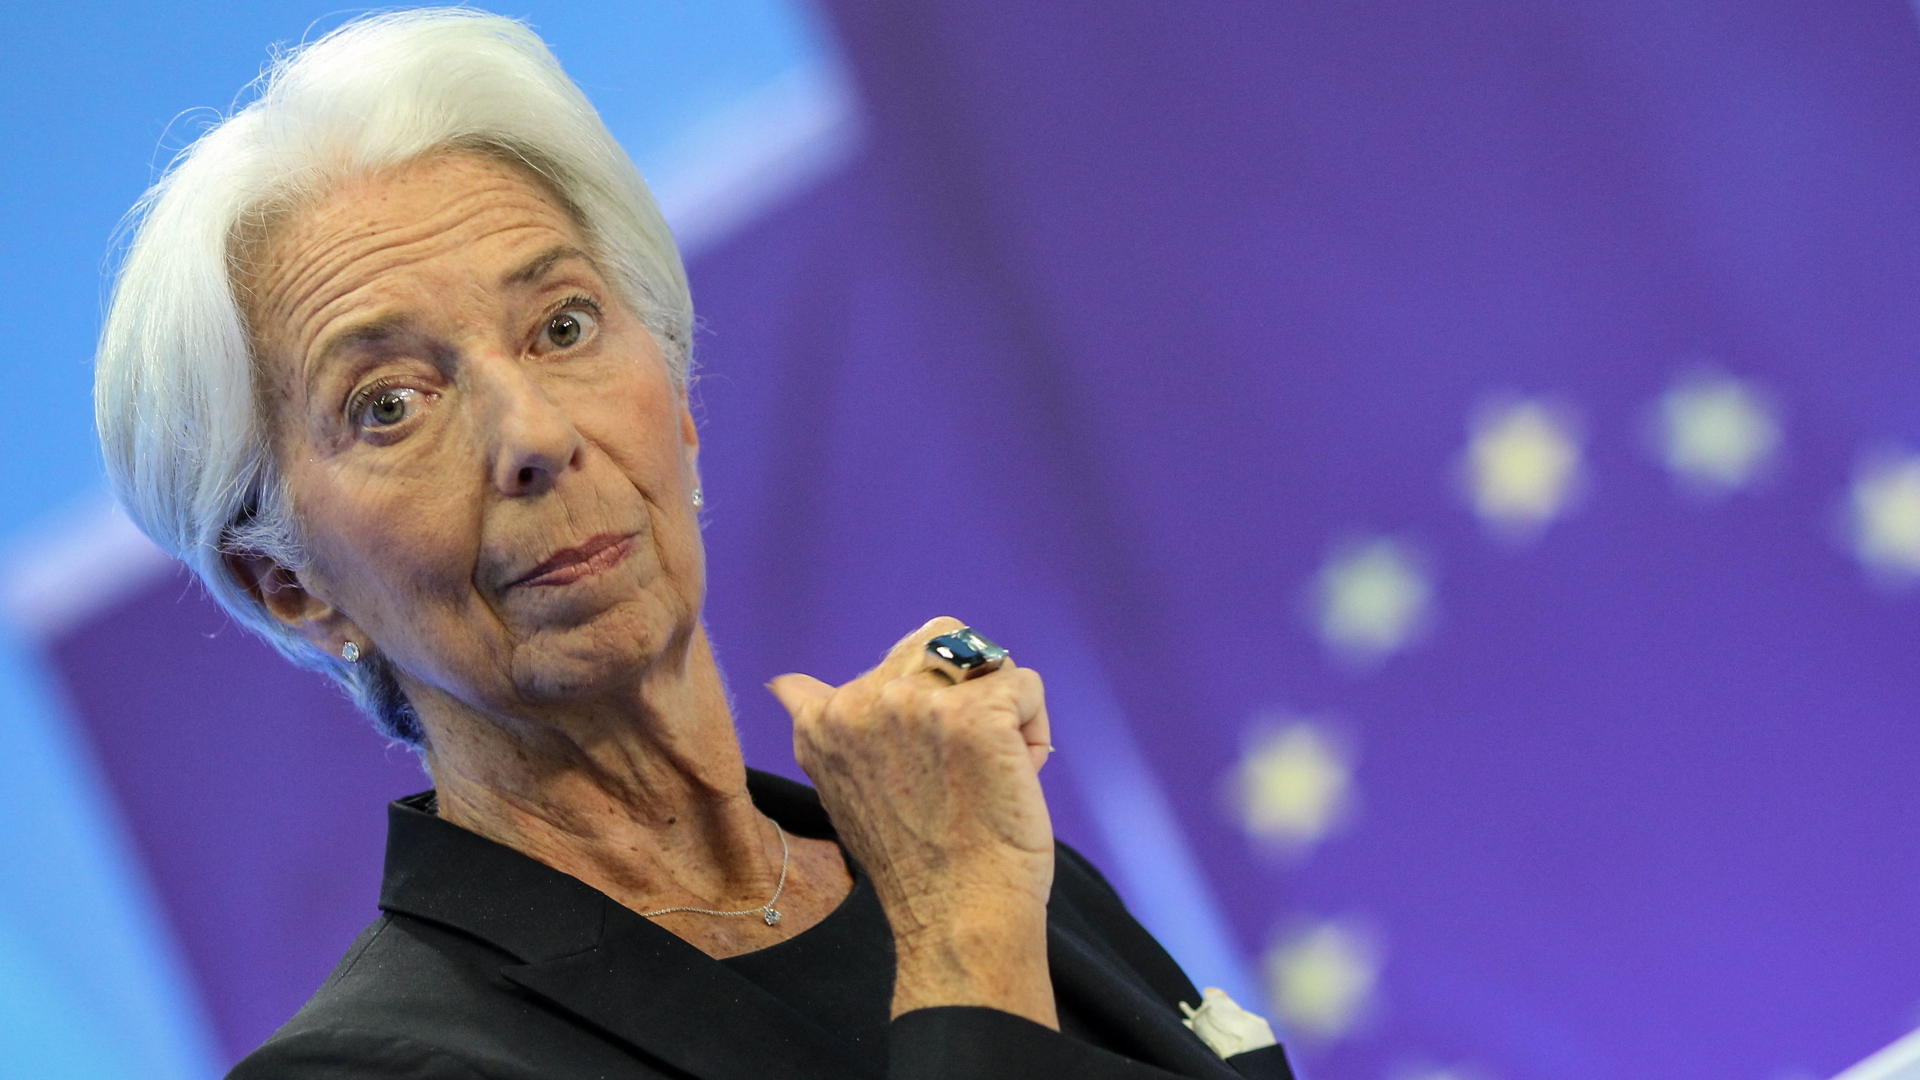 EZB-Präsidentin Christine Lagarde spricht bei einer Pressekonferenz